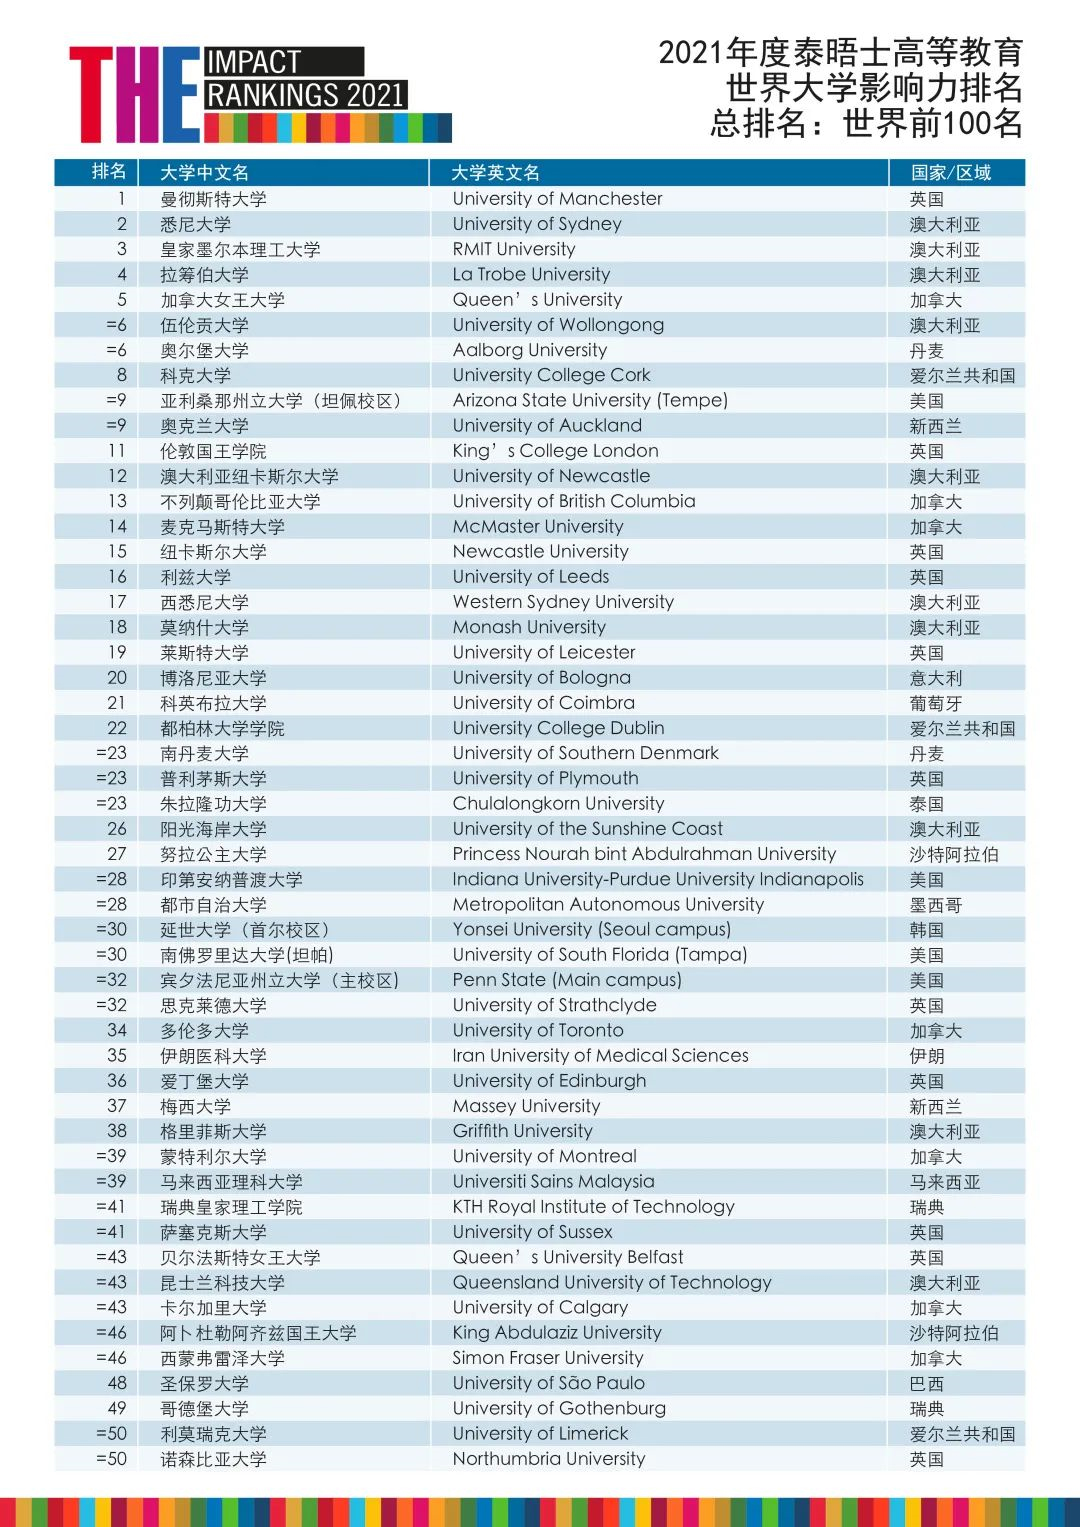 泰晤士高等教育2021年度世界大学影响力排名TOP100 (2).jpg